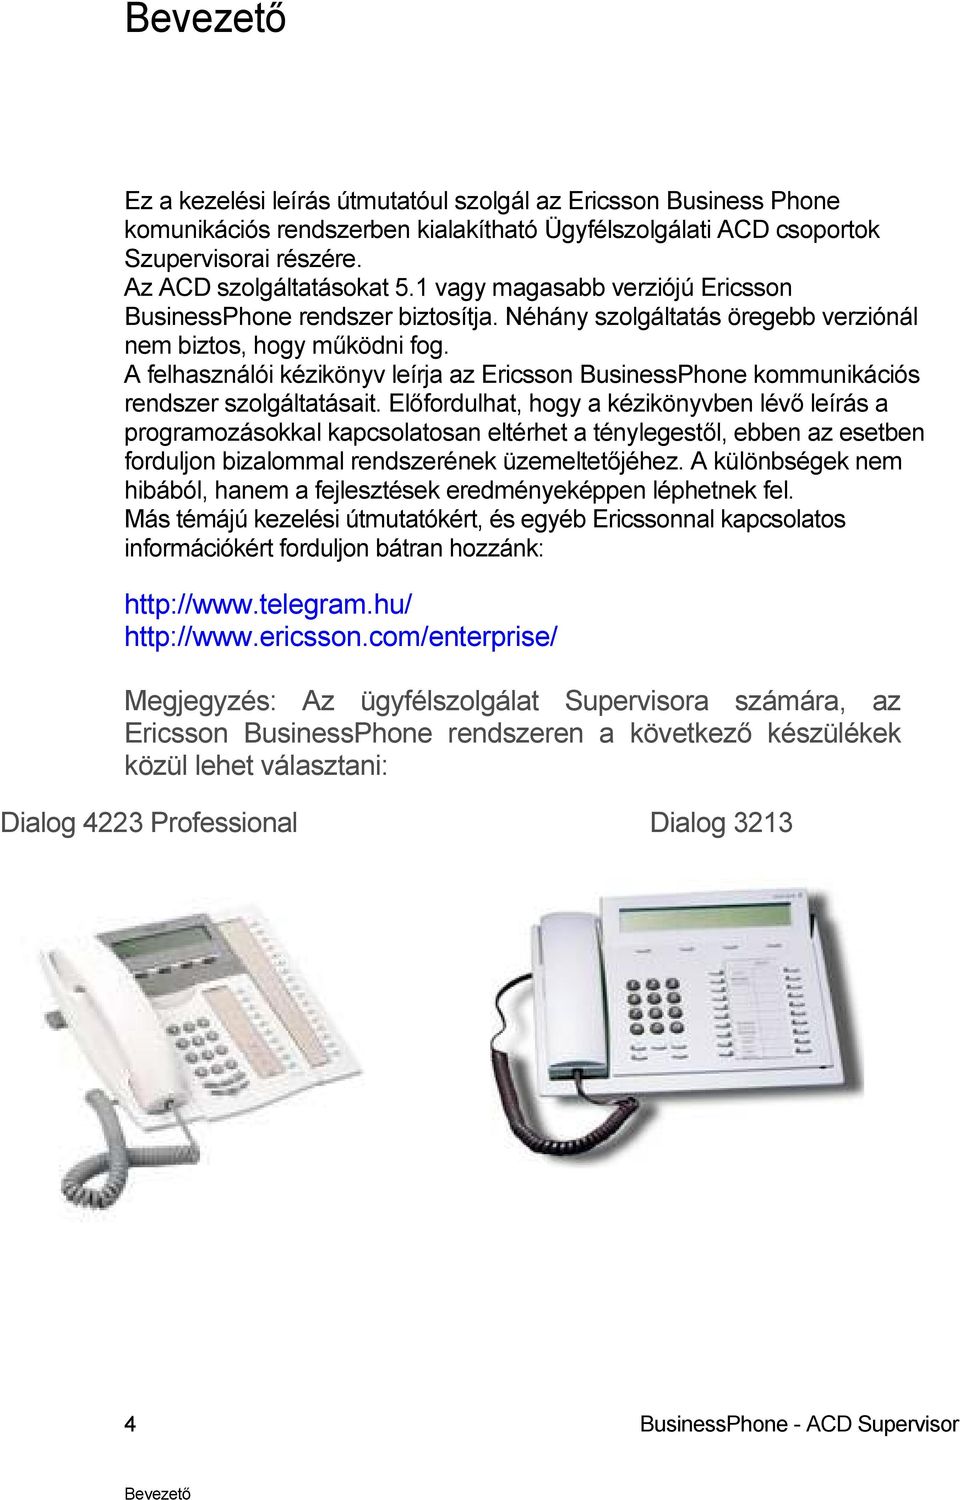 A felhasználói kézikönyv leírja az Ericsson BusinessPhone kommunikációs rendszer szolgáltatásait.